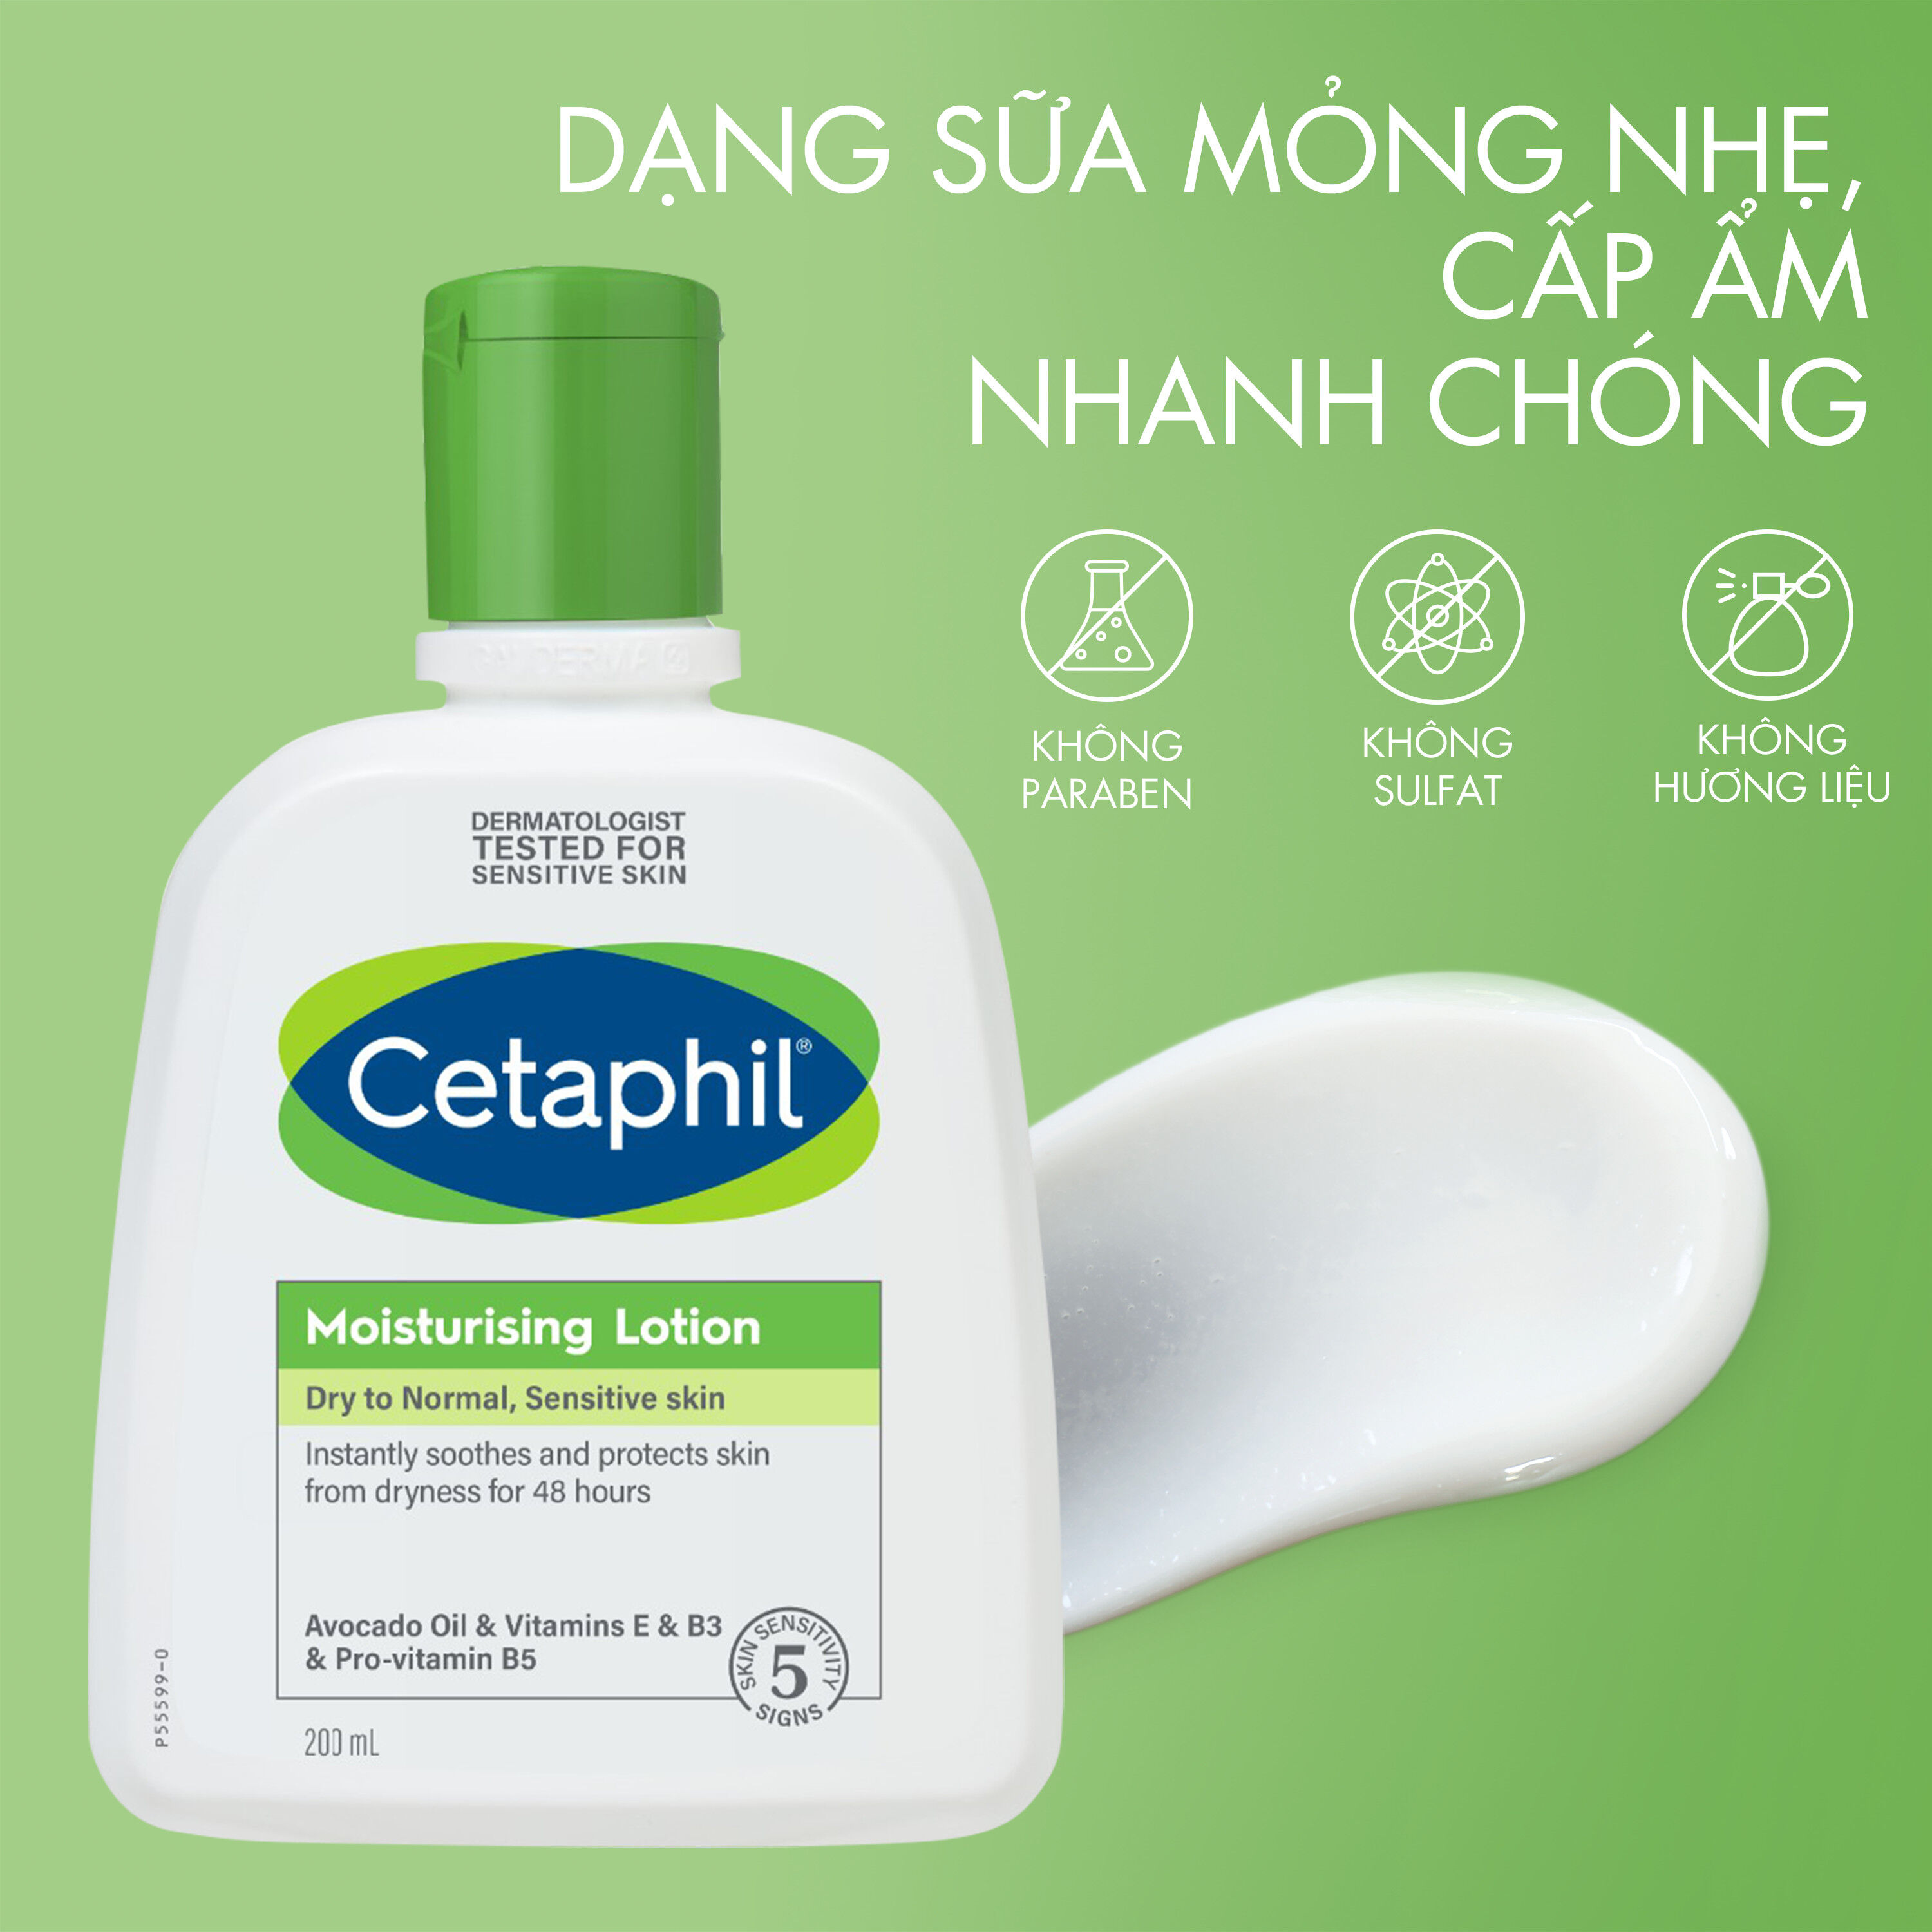 Cách dùng cetaphil moisturizing lotion là gì để chăm sóc da một cách hiệu quả